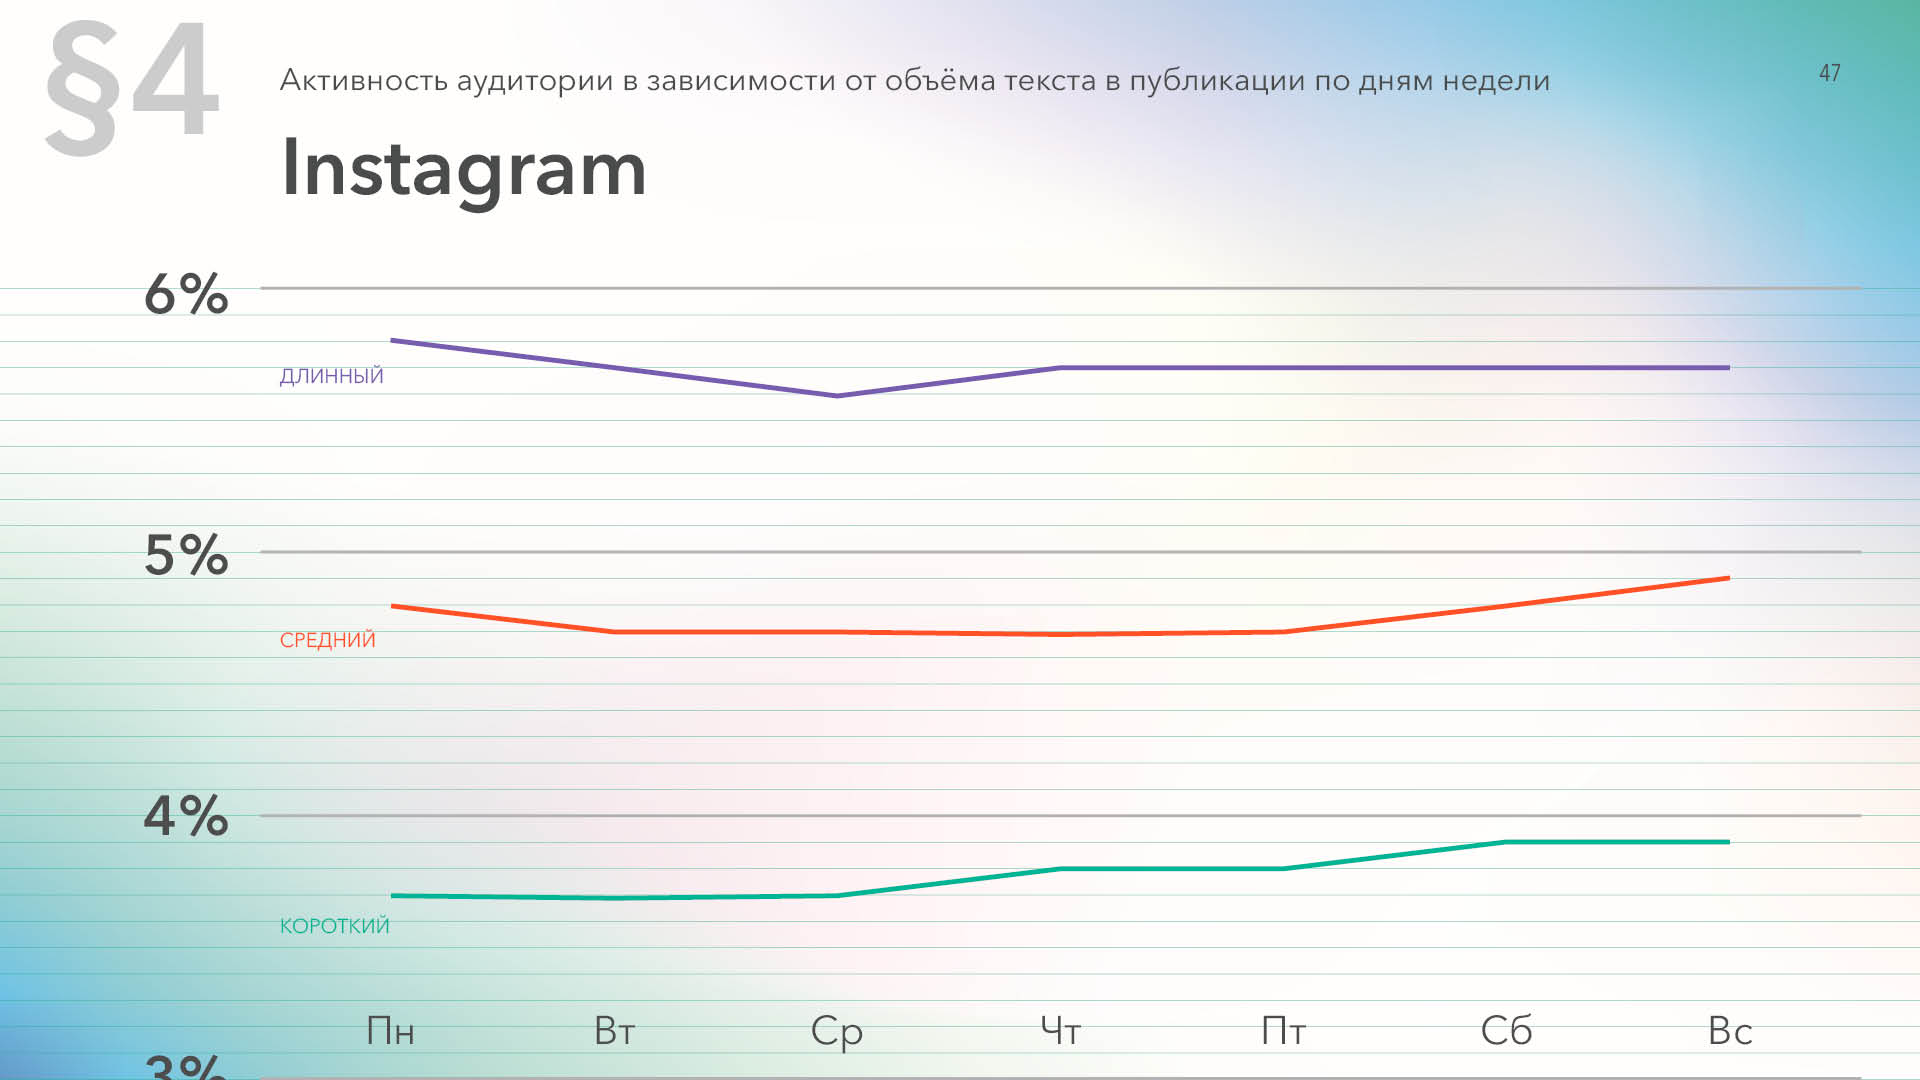 Активность в Instagram в зависимости от длины текста в постах и дня недели, данные за 2019 год